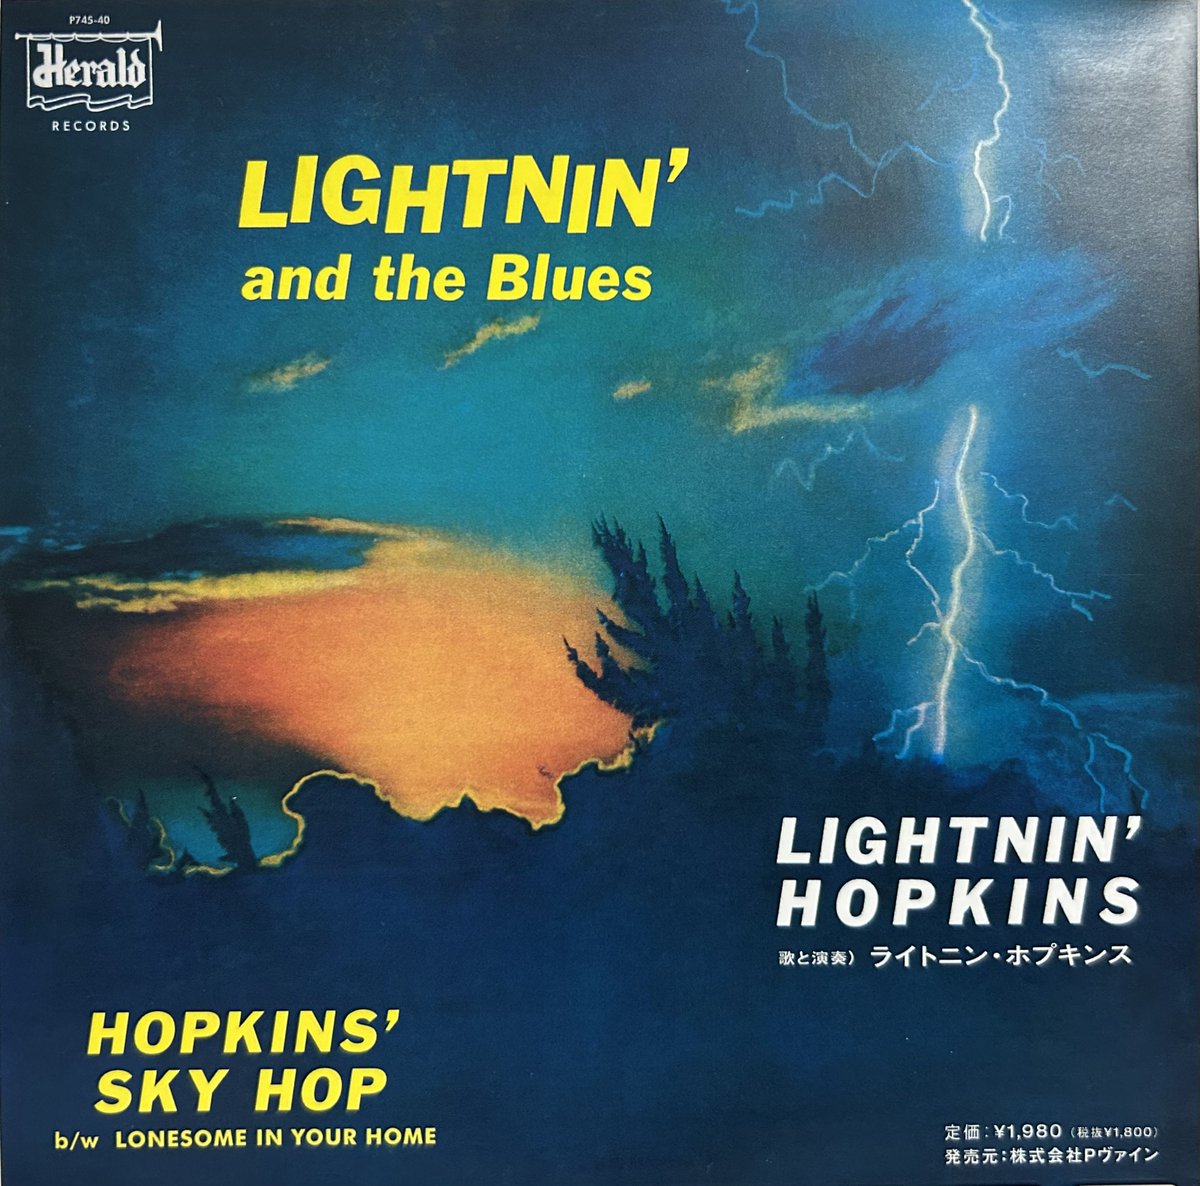 今日の1曲！
Lightnin' Hopkins, 
Lonesome In Your Home.
youtube.com/watch?v=qXcHtG…
#blues
#texas
#dirtyblues 
#lightninhopkins